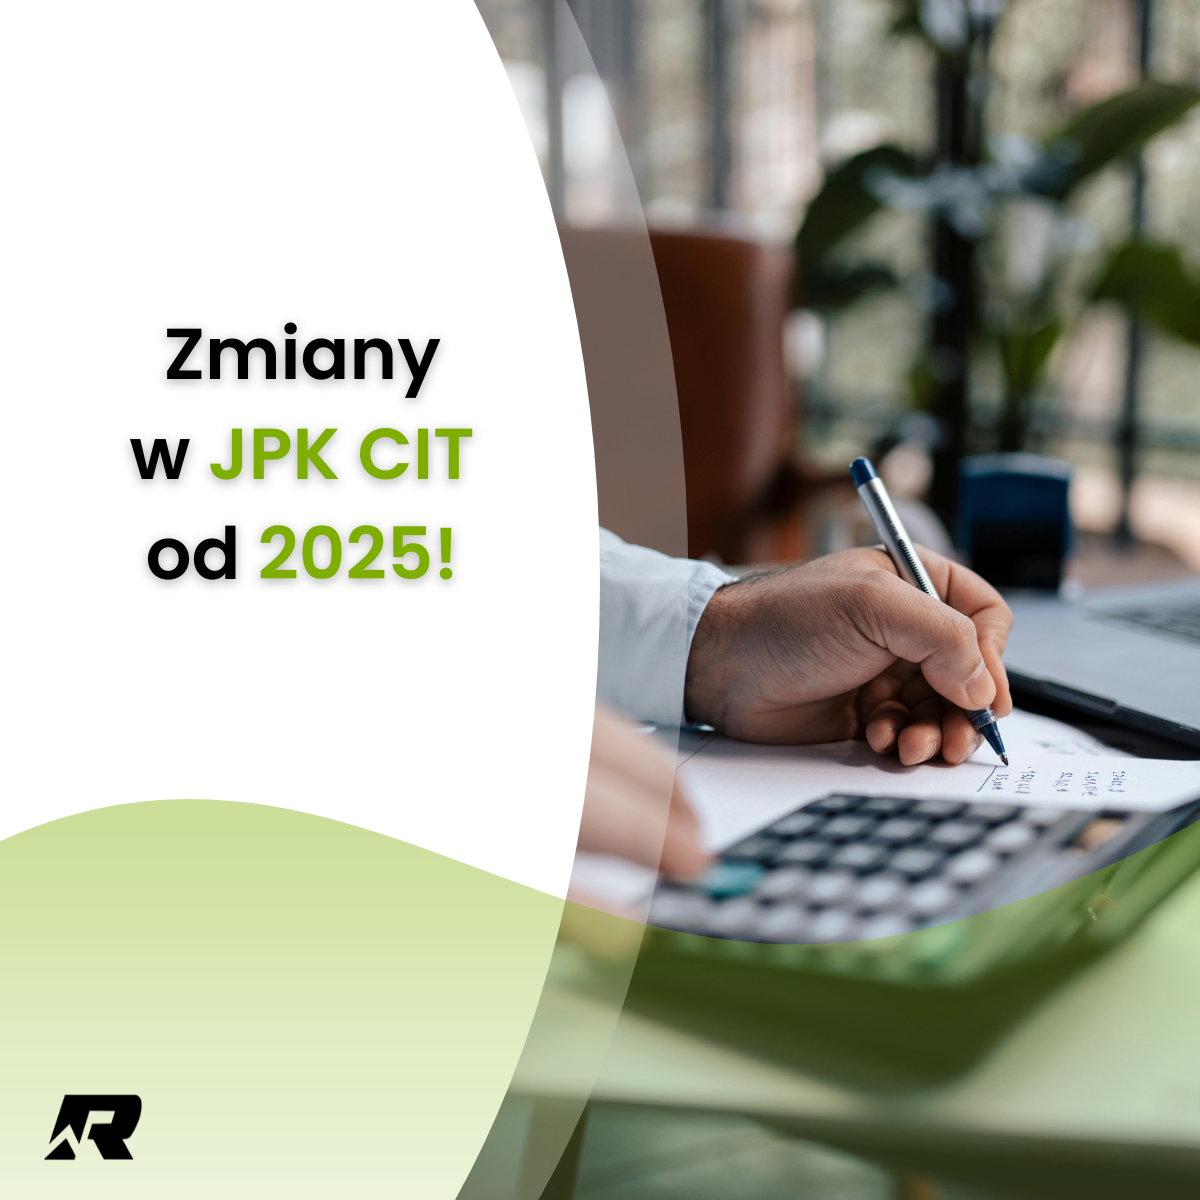 Zmiany w rachunkowości 2025 dla JPK CIT!